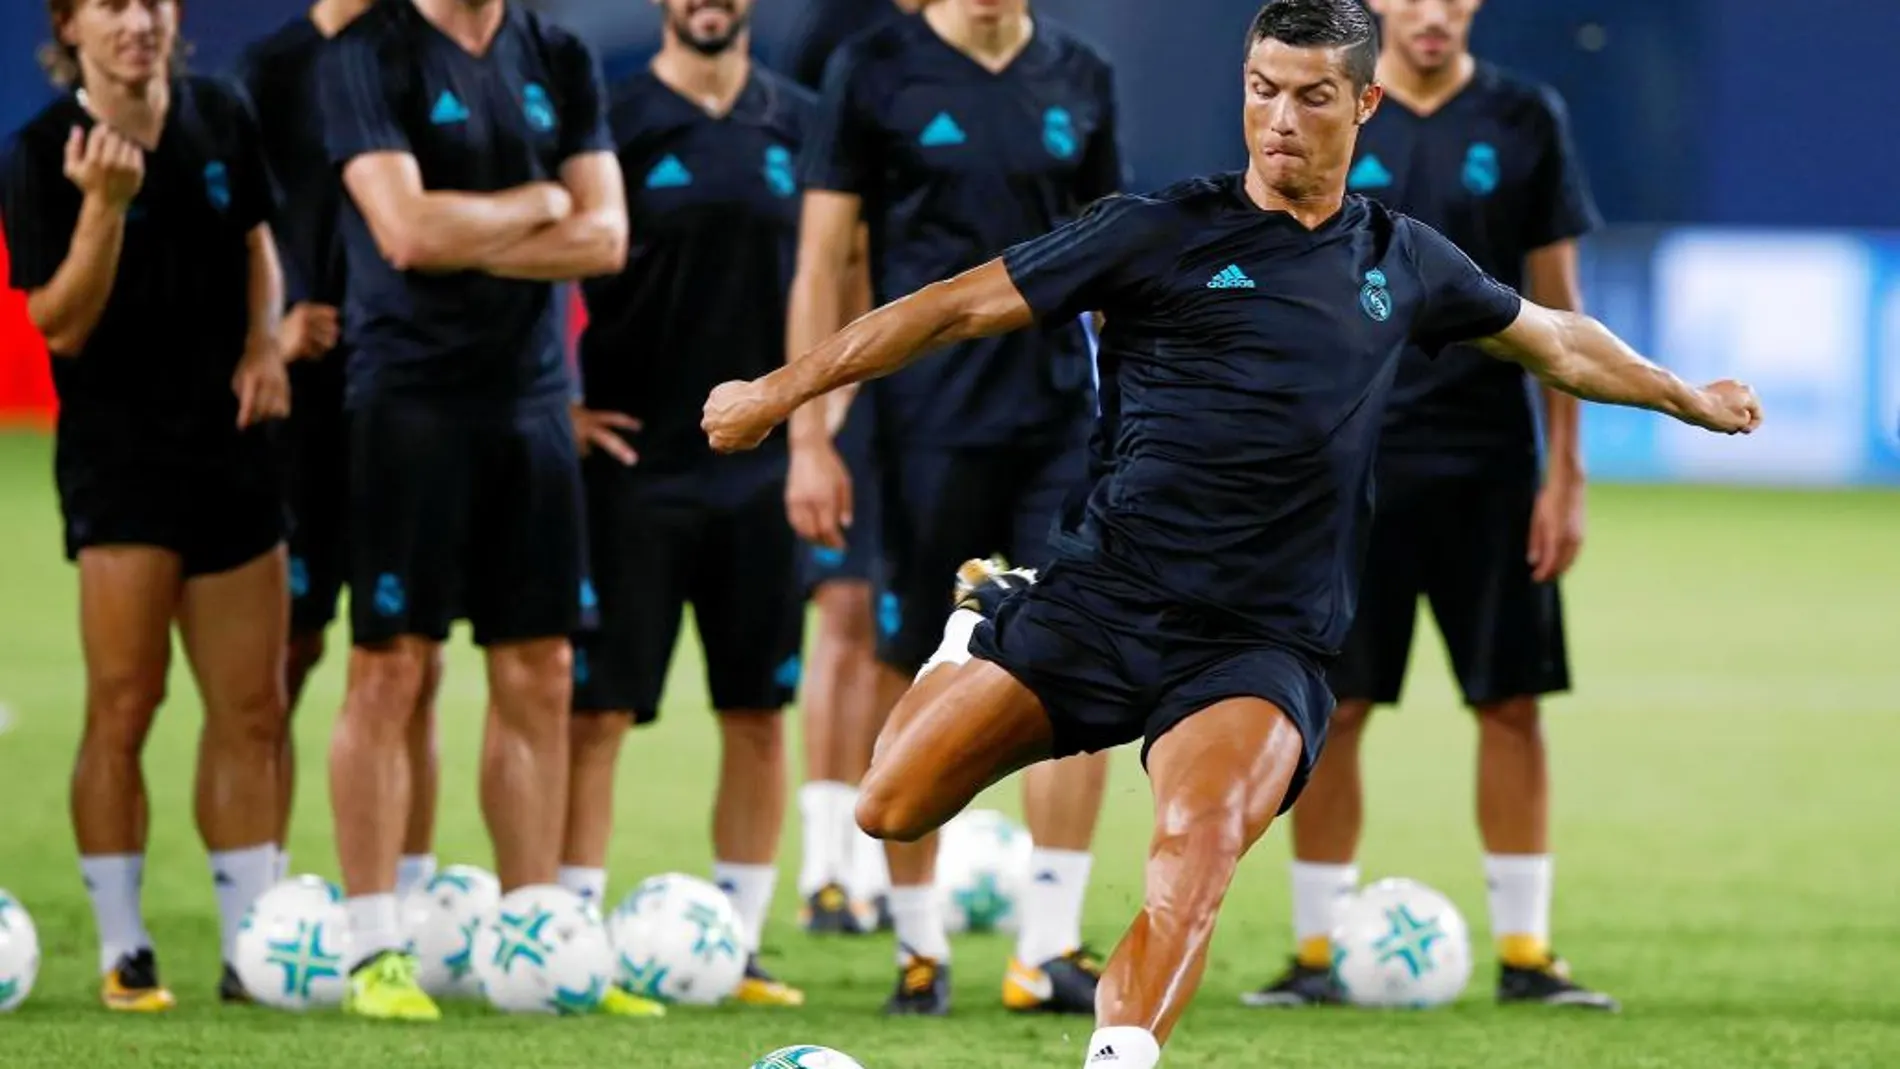 Ronaldo chuta a portería durante el entrenamiento del Real Madrid ayer en Skopje. Sus compañeros miran atentos mientras esperan su turno para lanzar